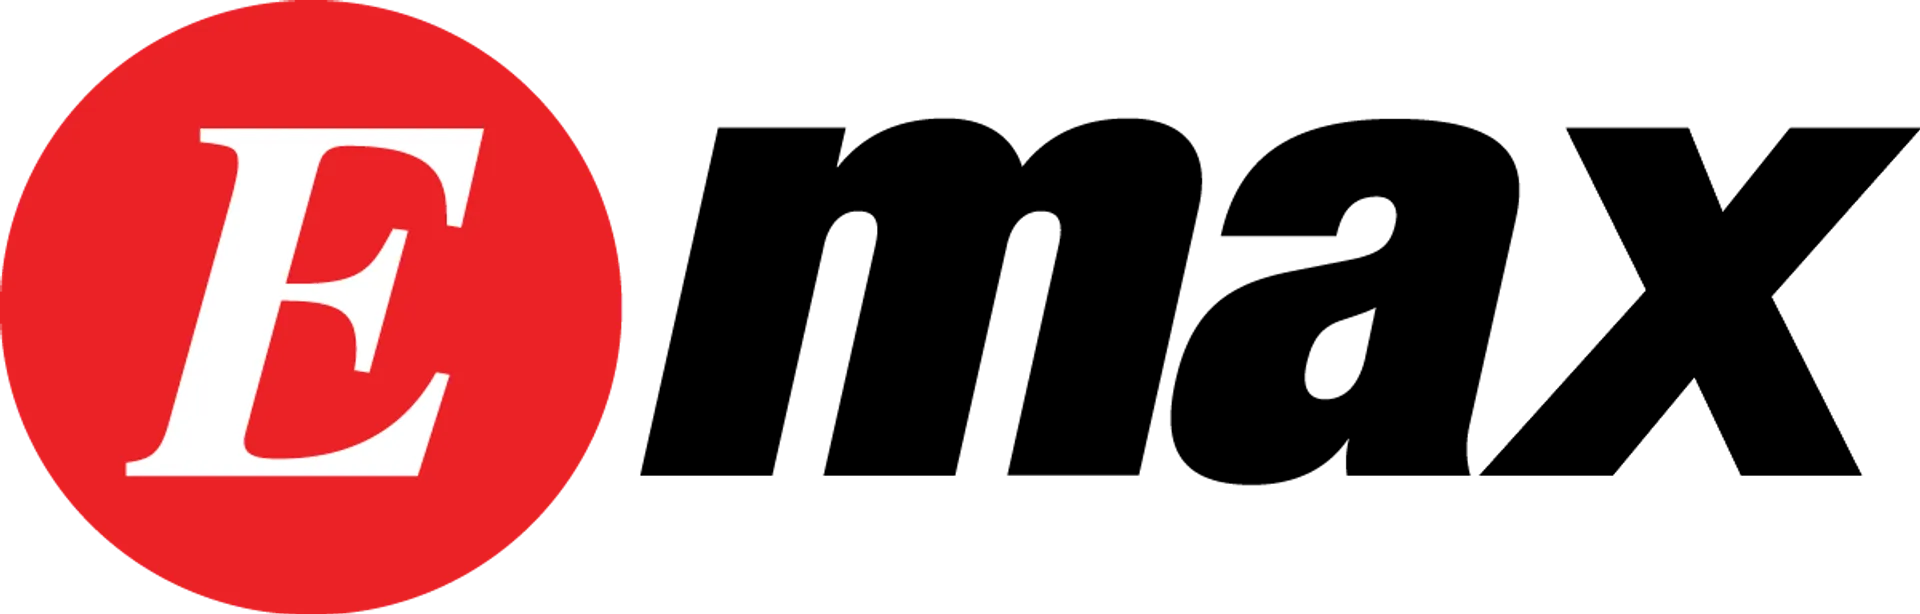 EMAX logo. Current catalogue